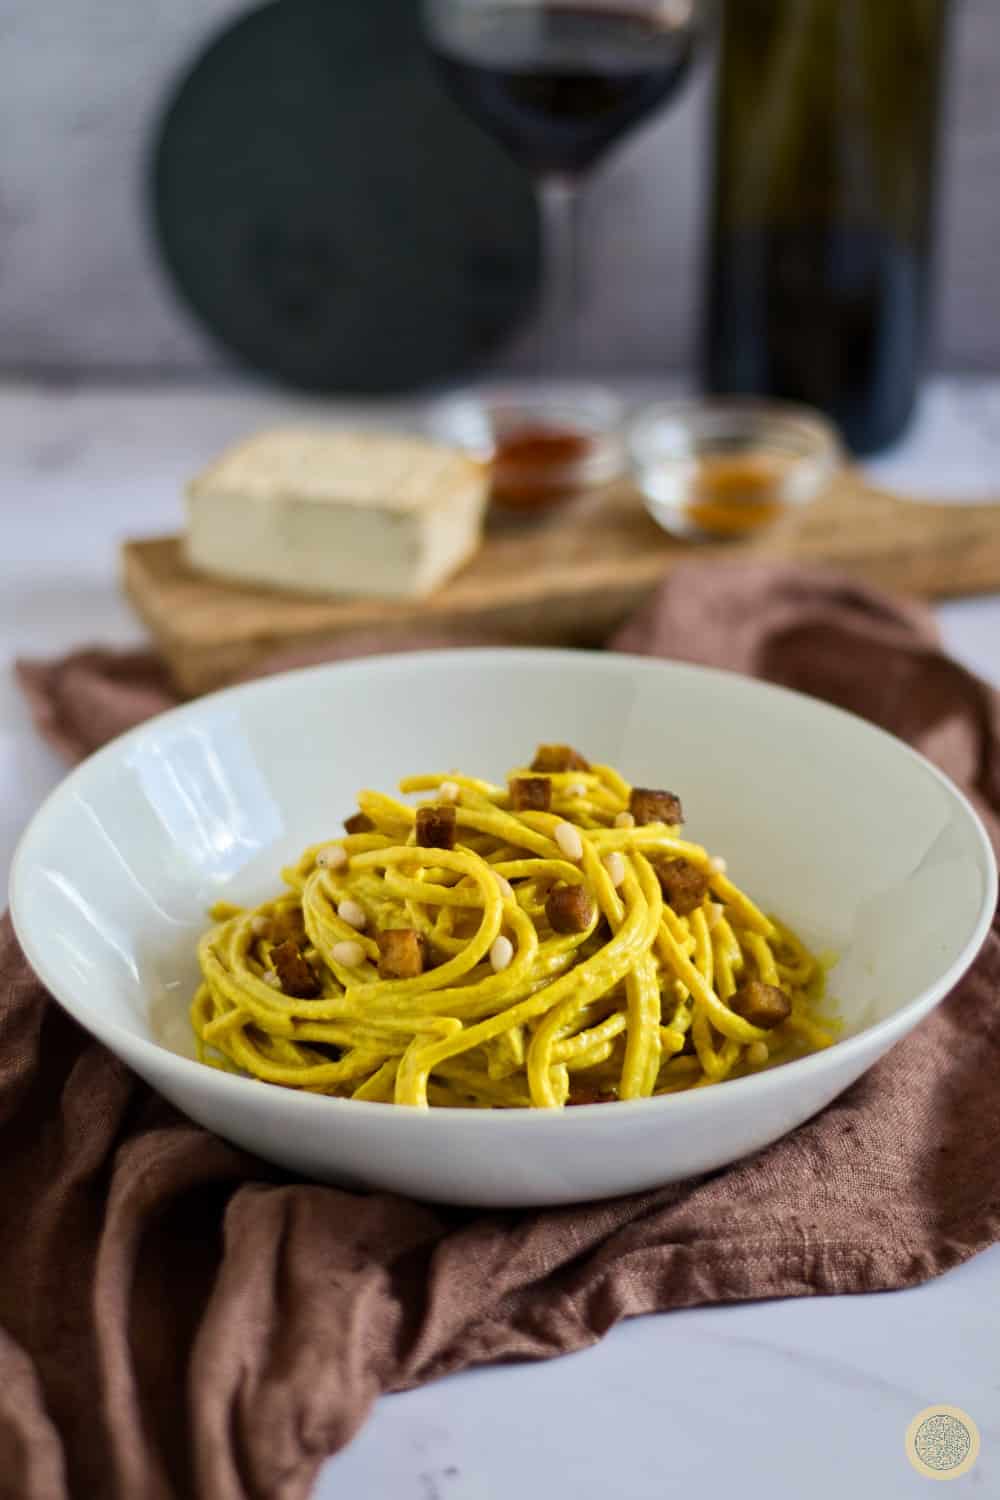 How long is vegan carbonara pasta good for?